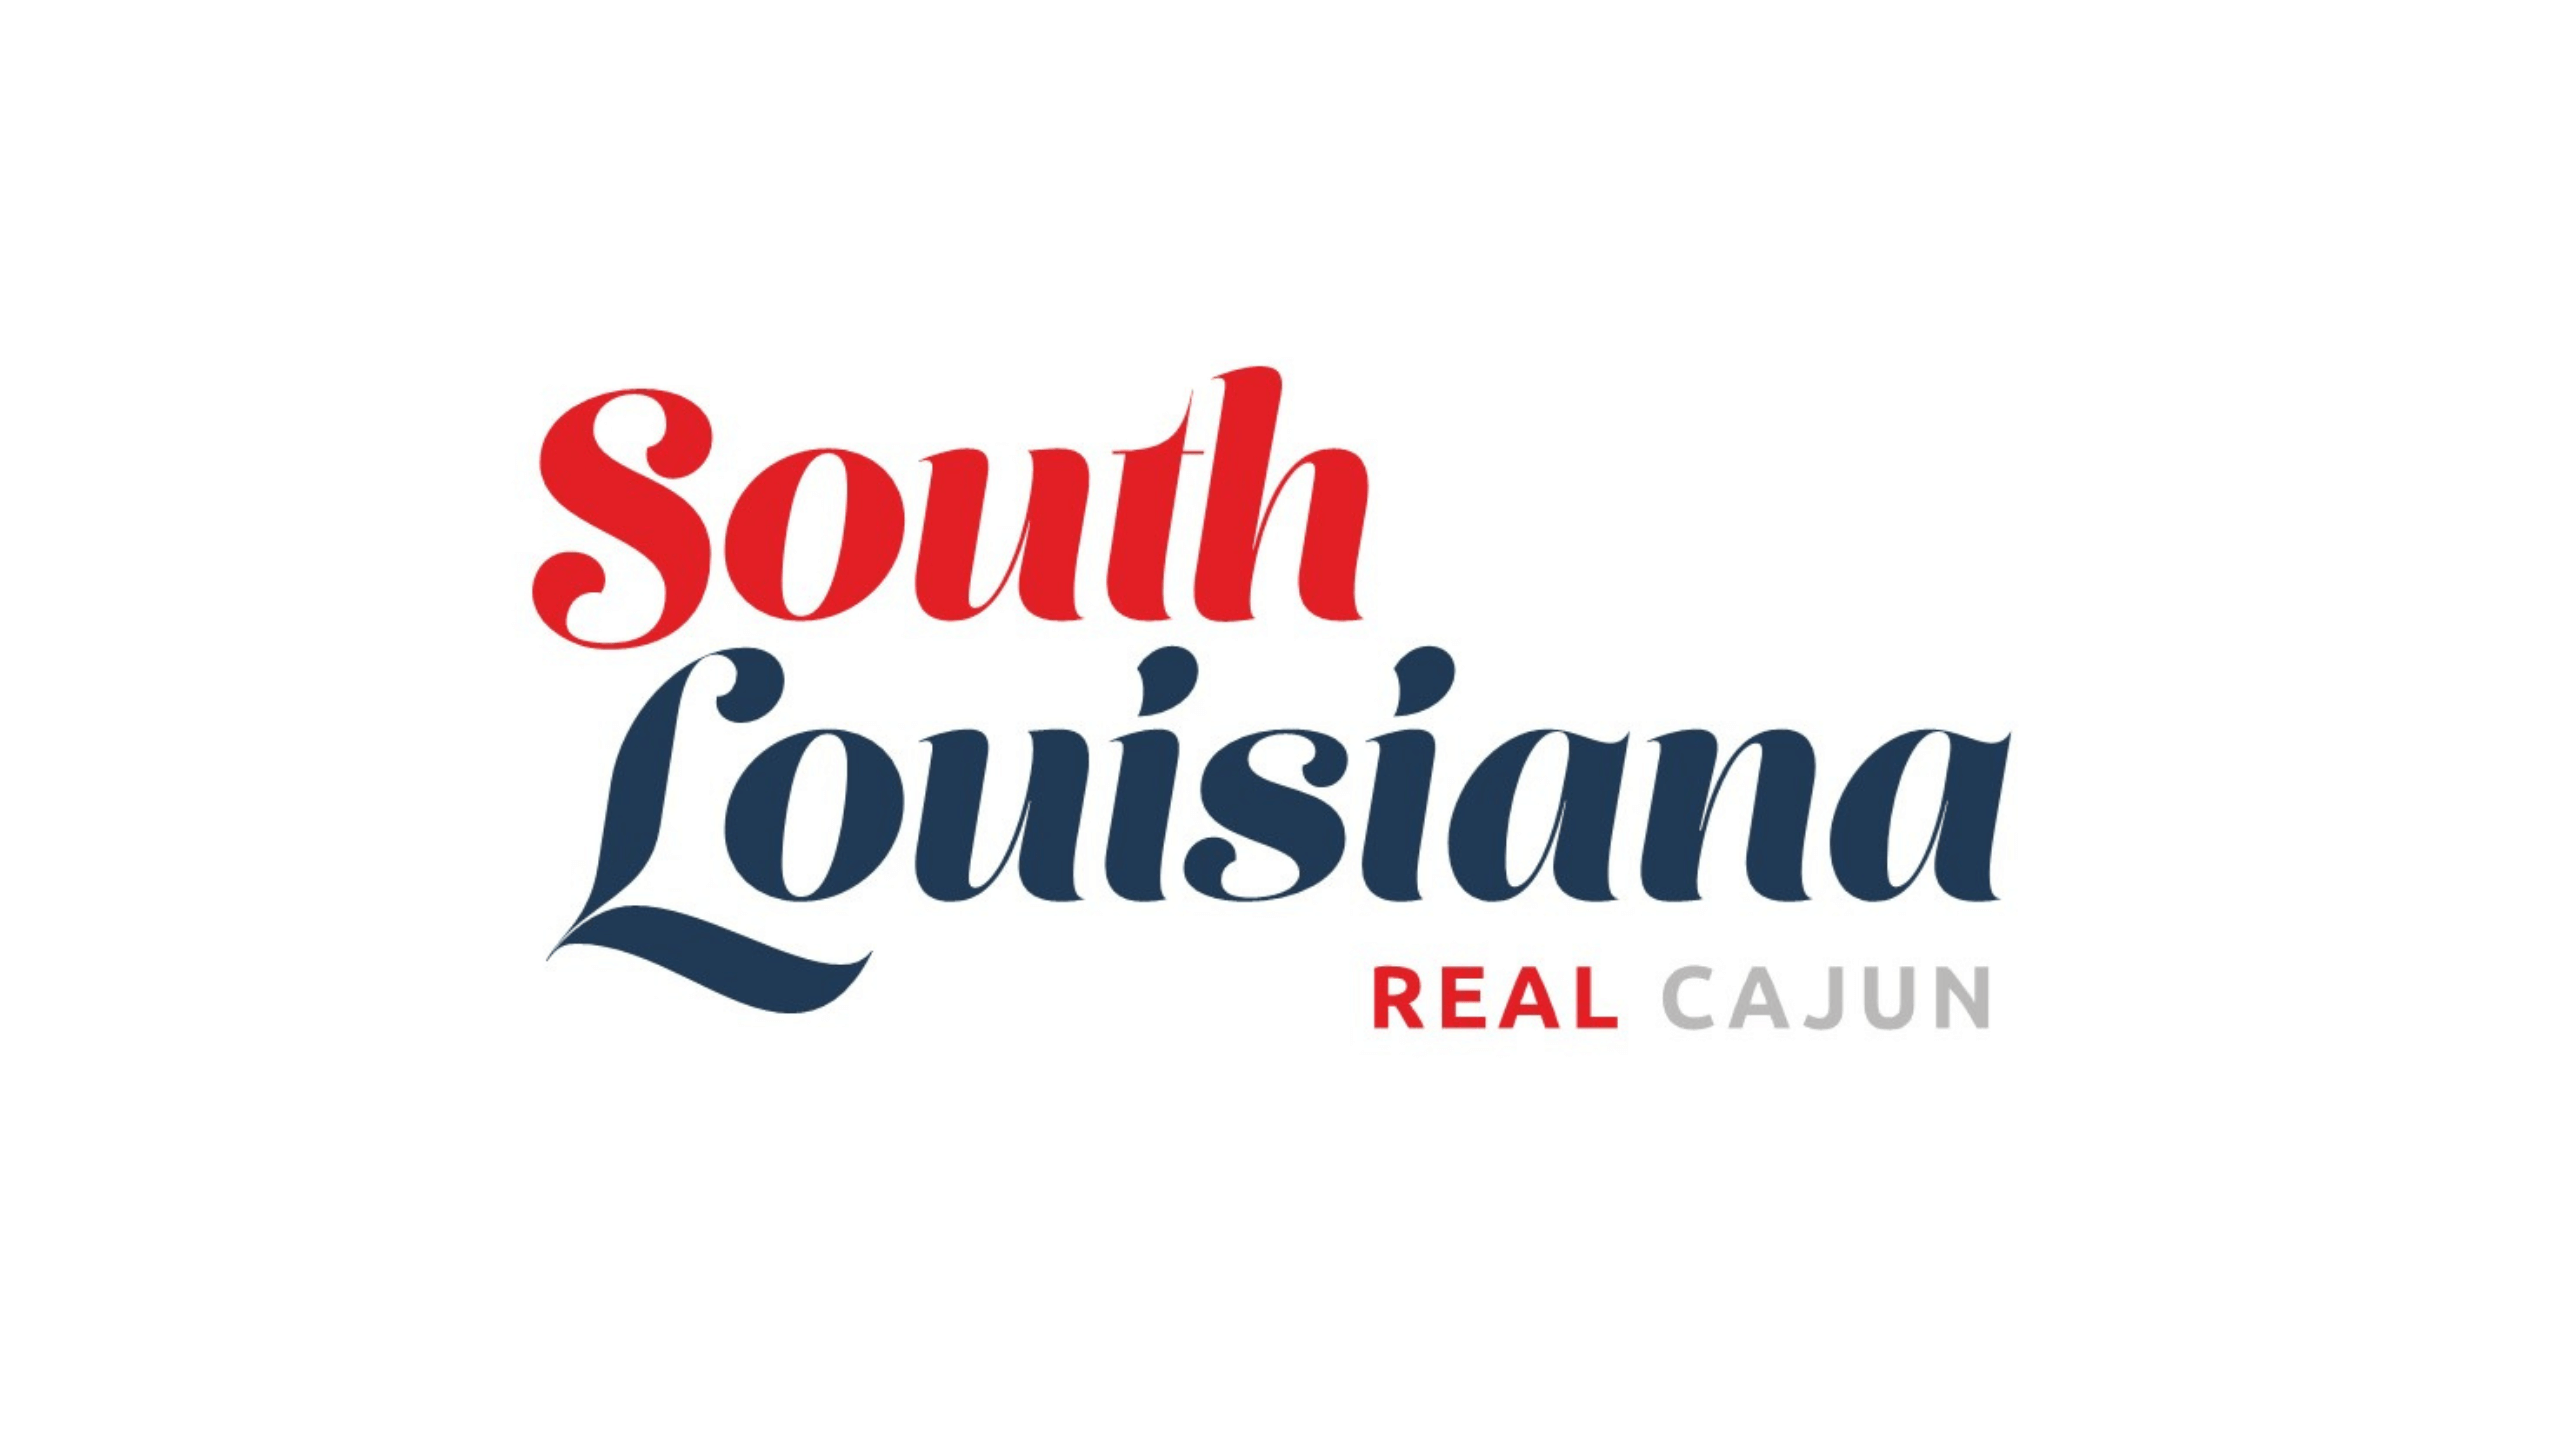 South Louisiana logo.